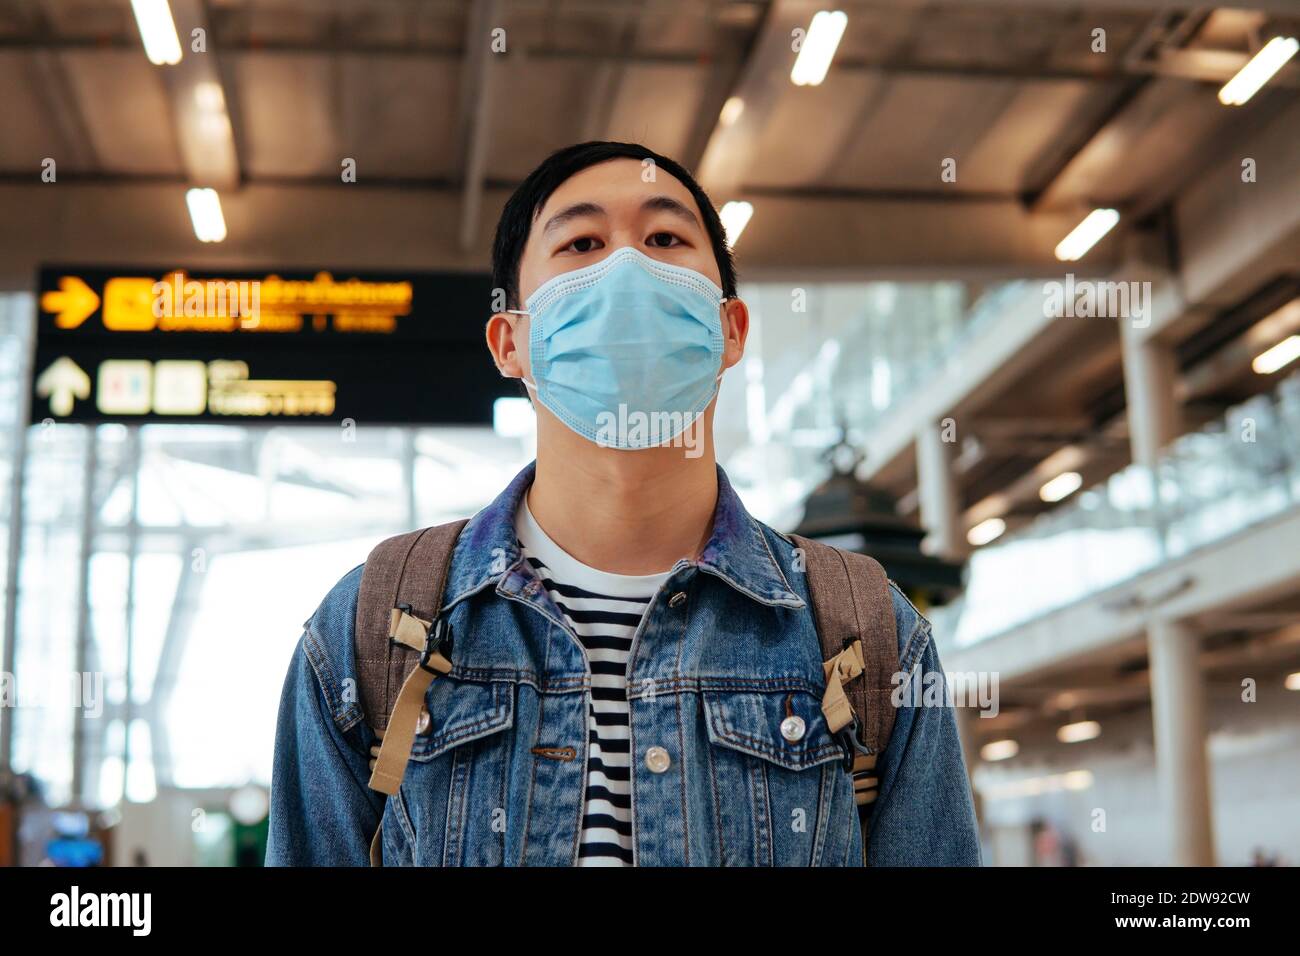 Asiatischer männlicher Reisender, der eine Gesichtsmaske trägt, die auf das Einsteigen in ein Flugzeug wartet. Junge Touristen warten auf Flughafen mit Abflug Bord im Hintergrund während Covid-19 Virus Pandemie Stockfoto